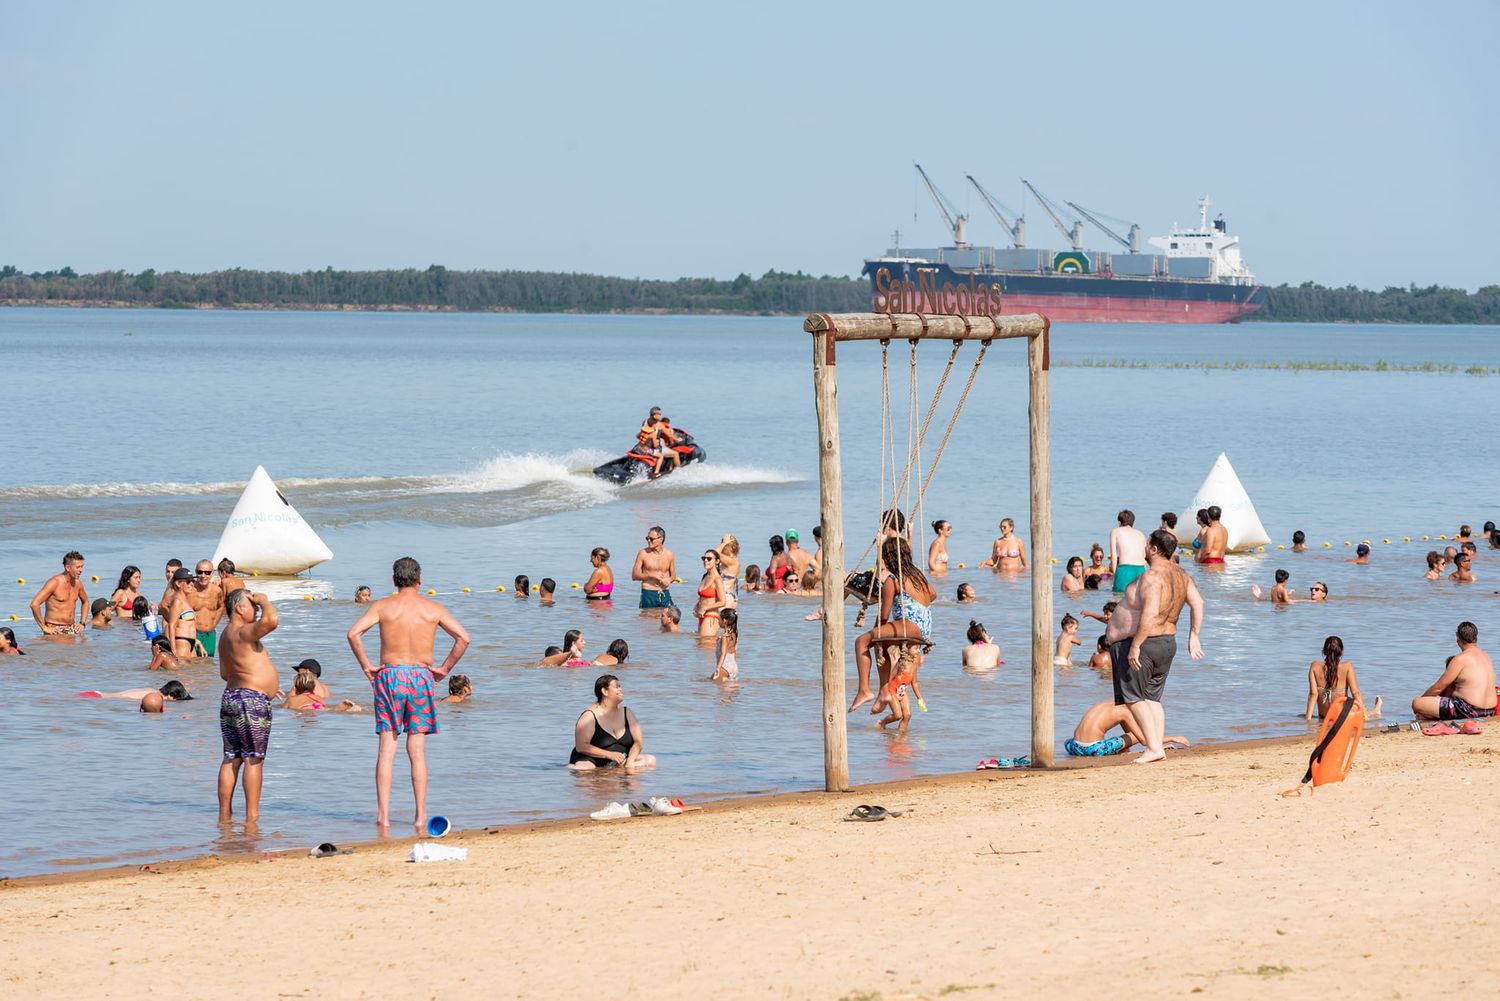 Verano en San Nicolás: Las playas a orillas del Paraná, el gran atractivo turístico